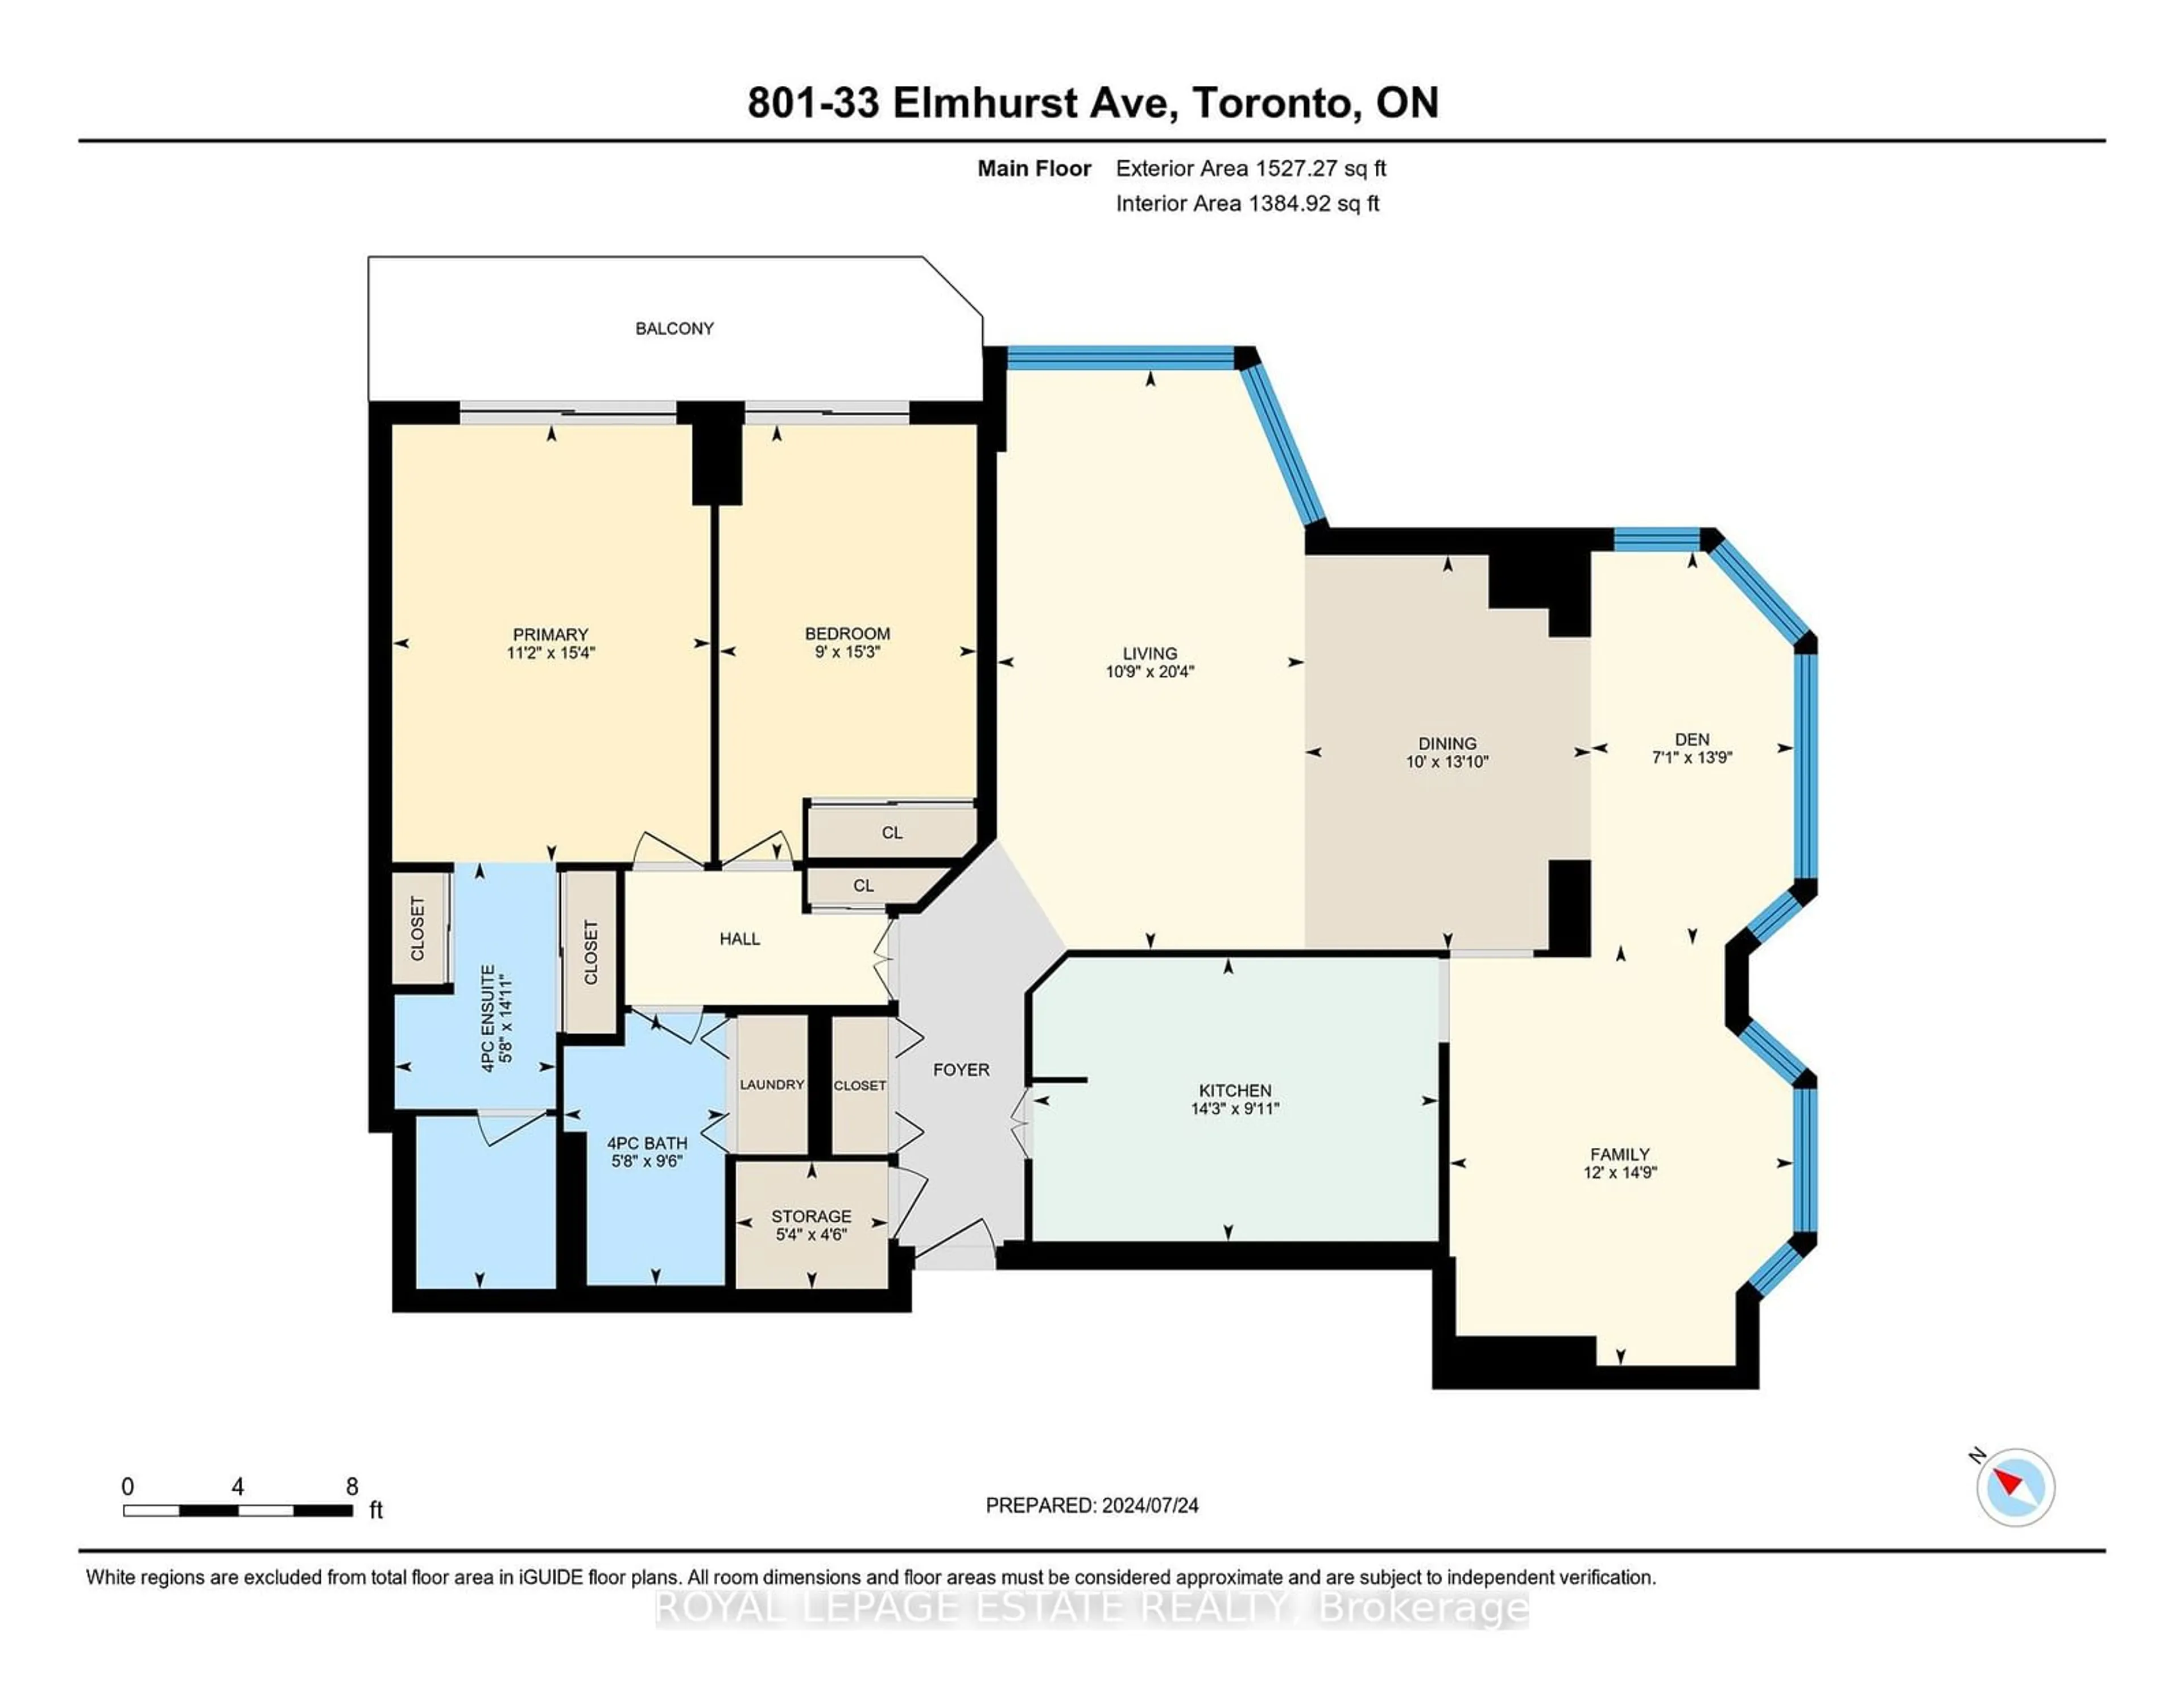 Floor plan for 33 Elmhurst Ave #801, Toronto Ontario M2N 6G8